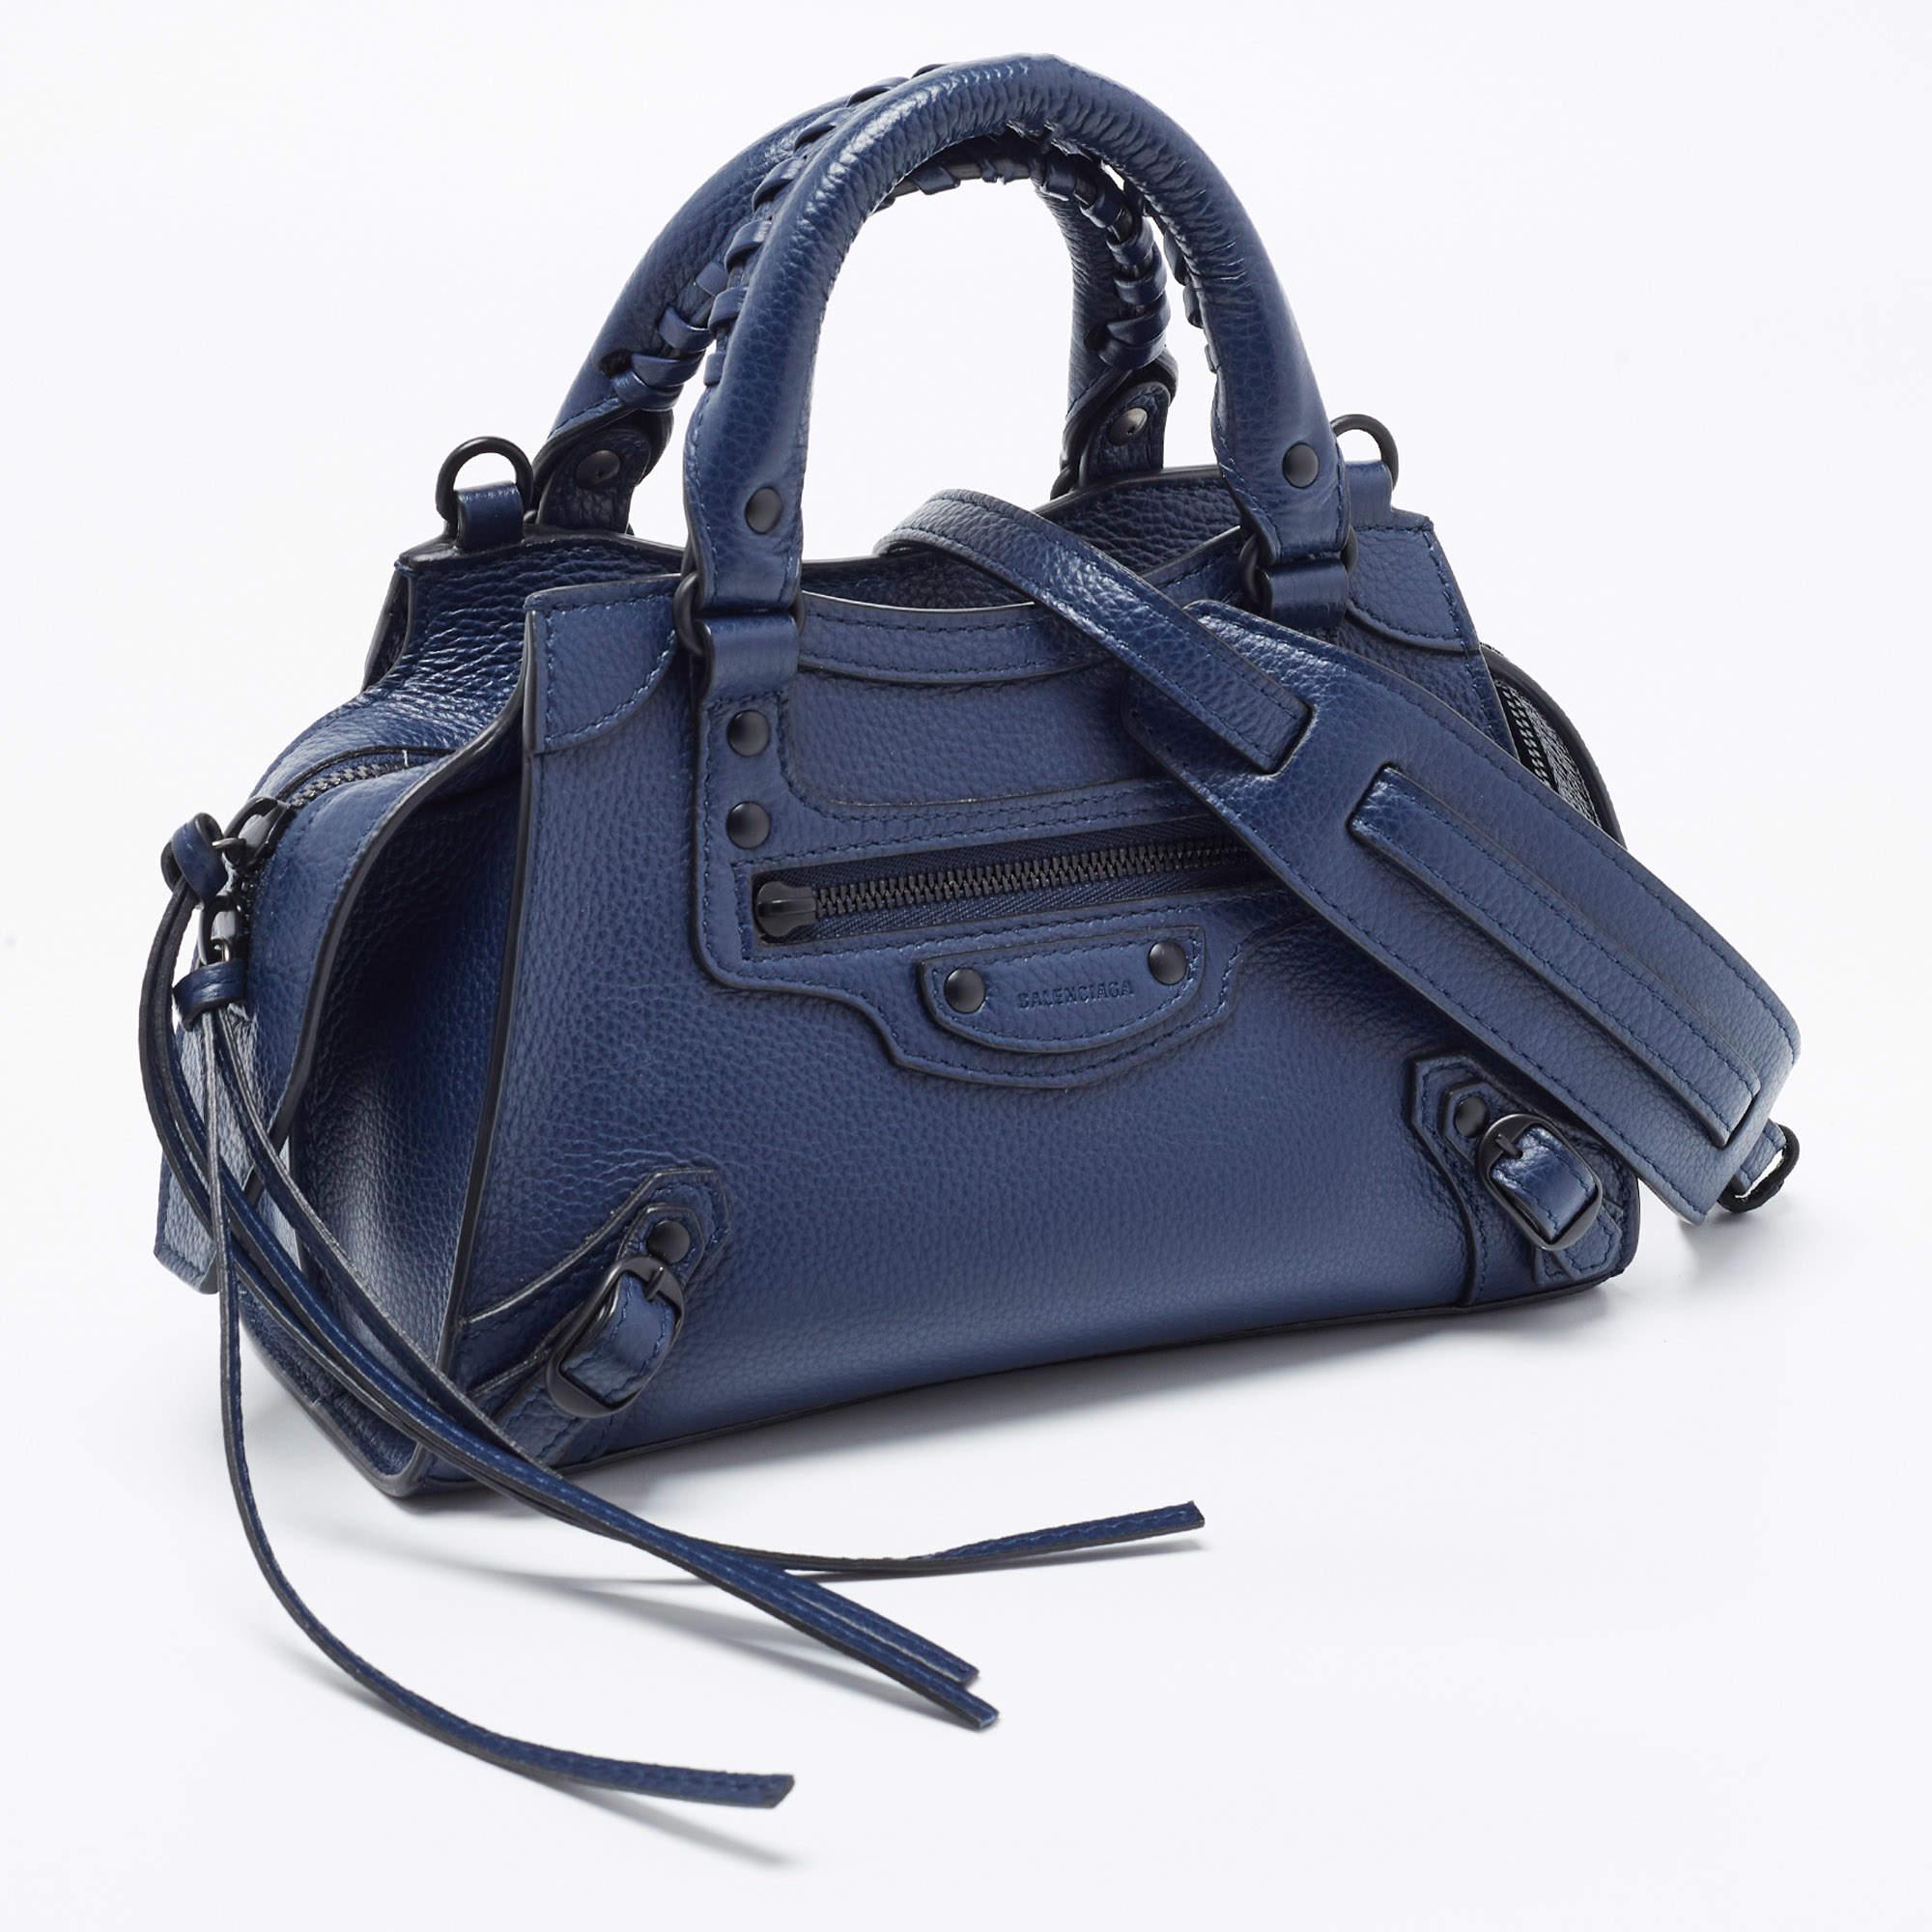 Le fourre-tout City de Balenciaga est un sac à main compact et élégant, fabriqué en cuir bleu foncé de première qualité. Il présente le design Neo Classic emblématique avec des accessoires de couleur noire, une fermeture à glissière sur le dessus et